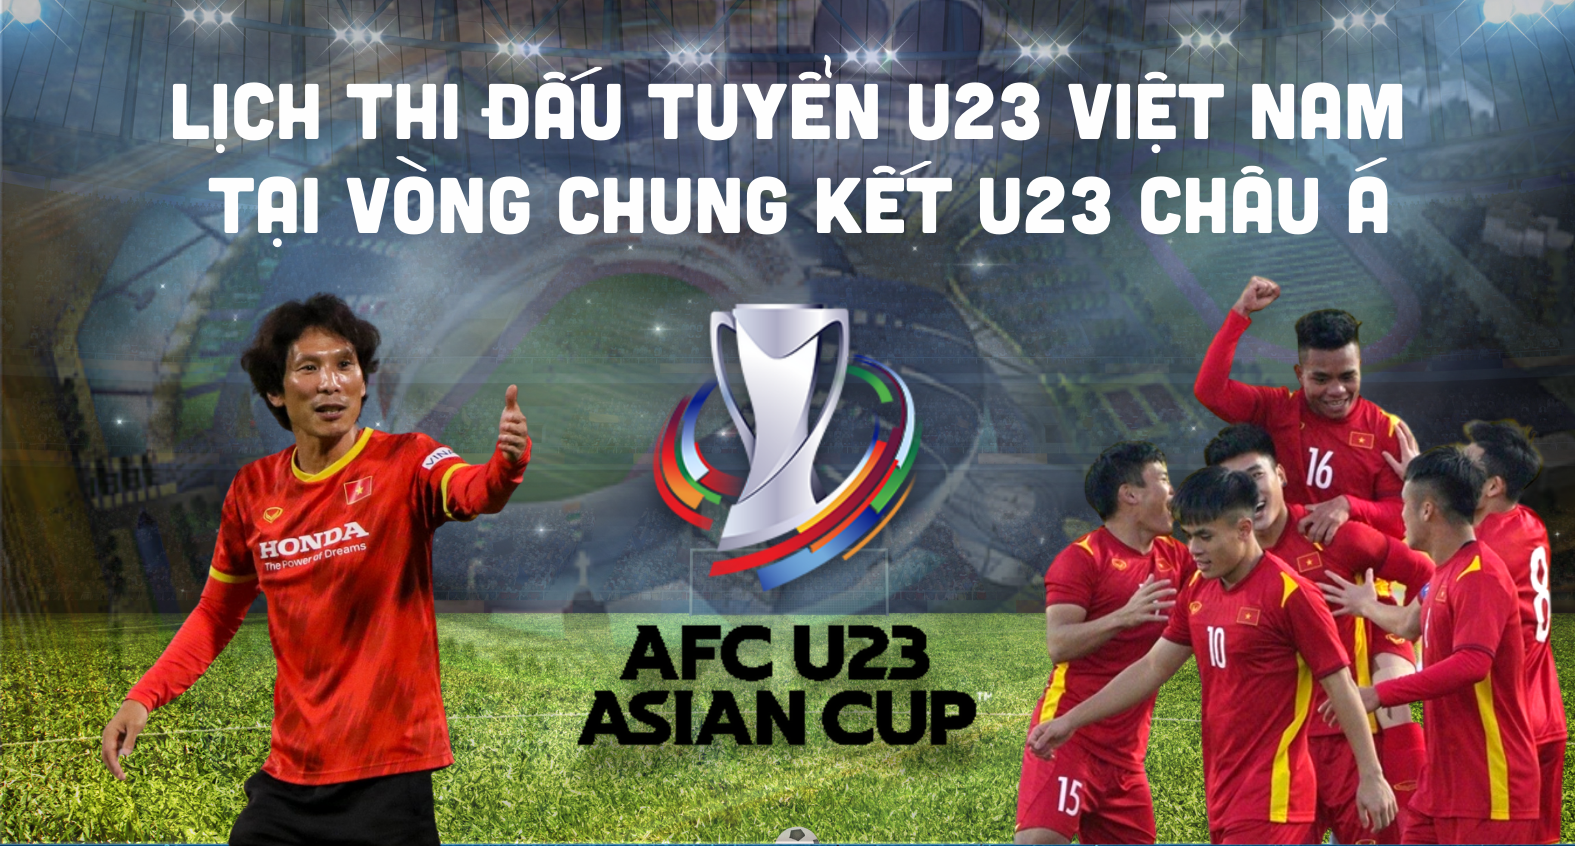 [Infographics] Lịch thi đấu tuyển U23 Việt Nam tại Vòng chung kết U23 châu Á